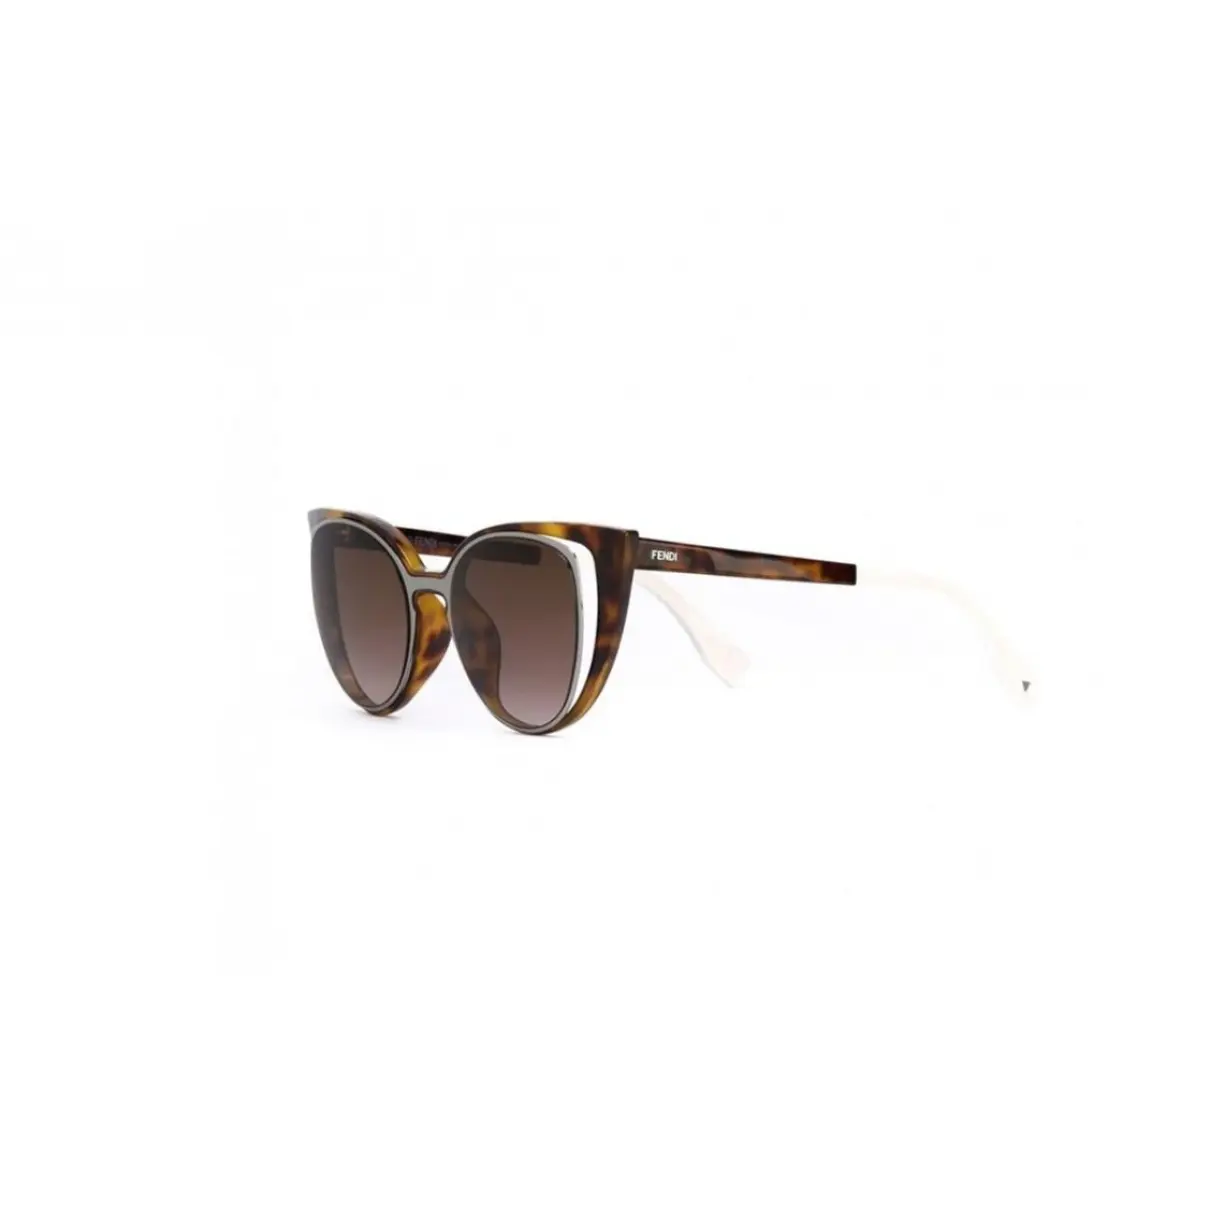 Fendi Sunglasses for sale